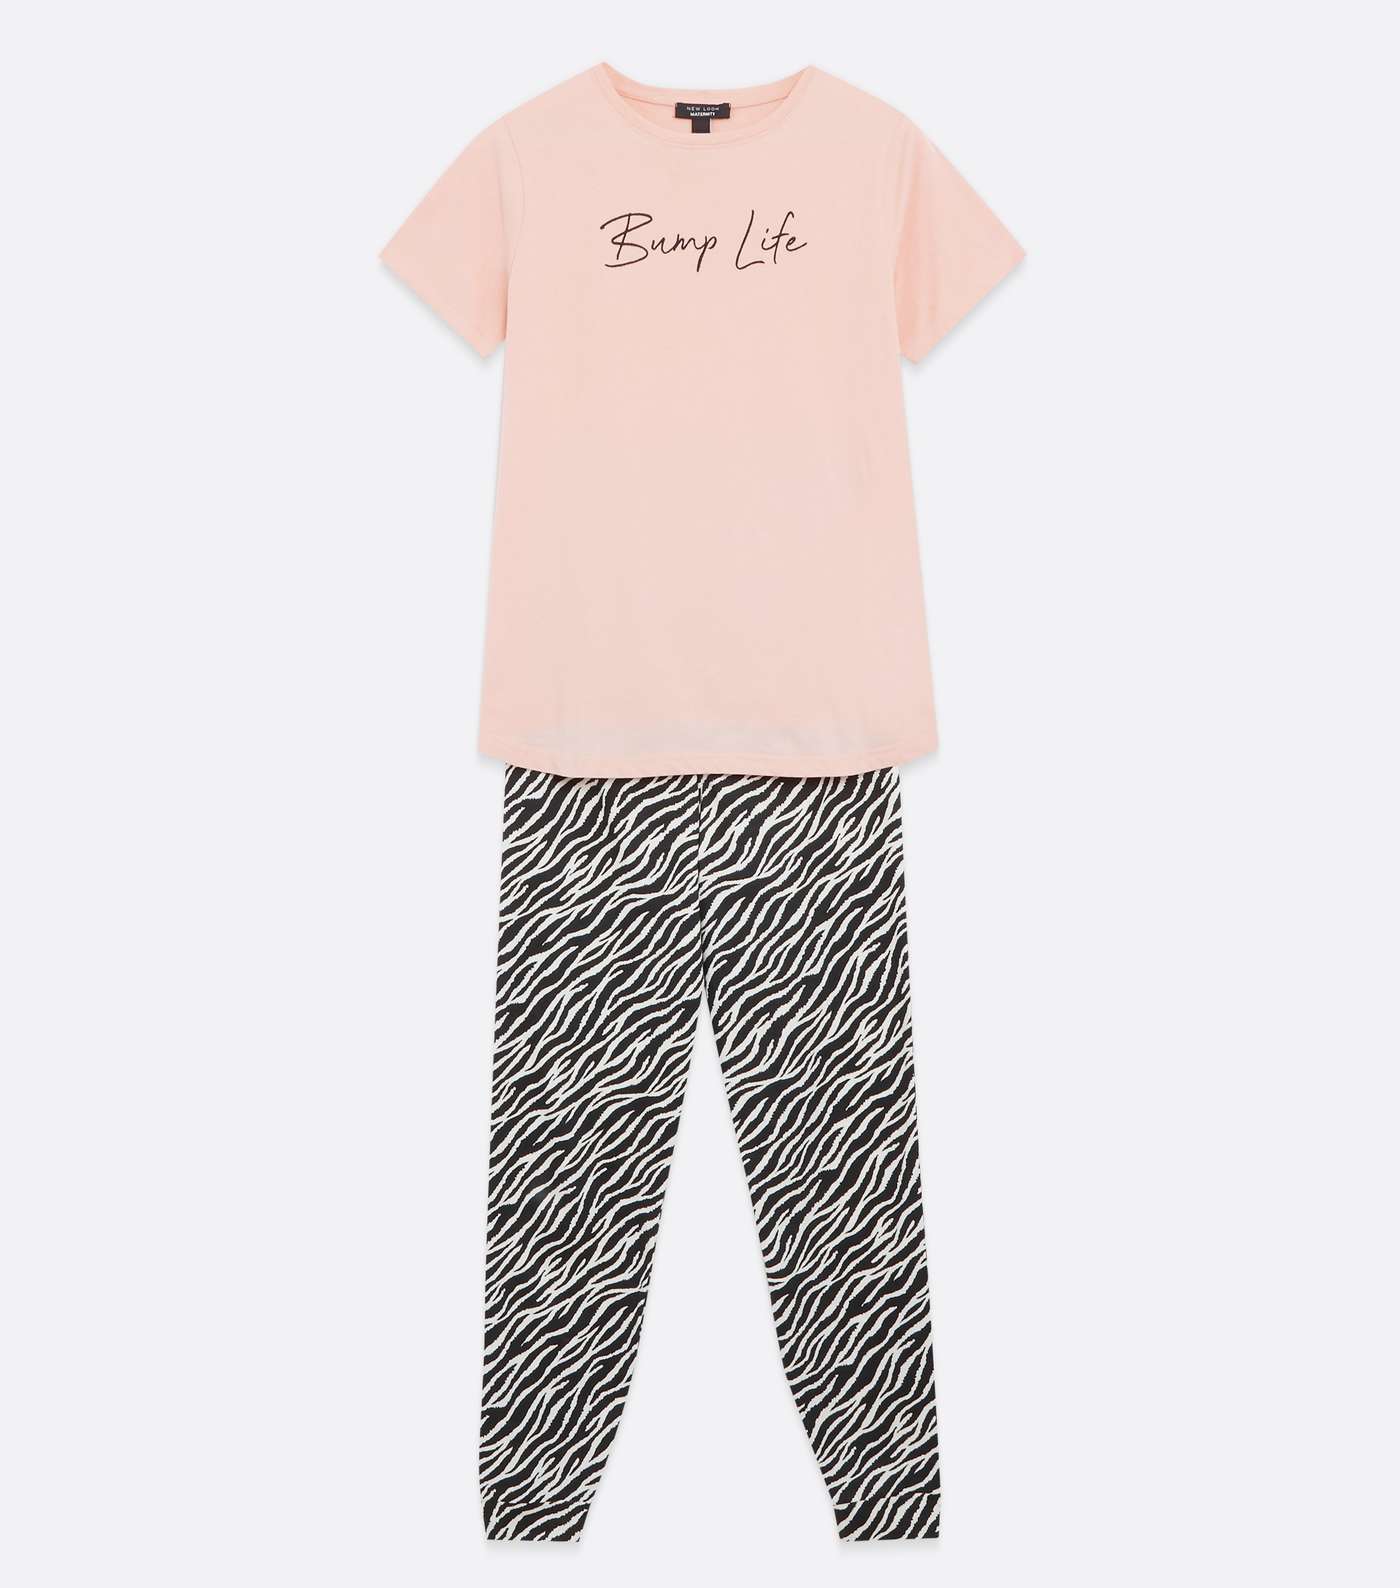 Maternity Pink Jogger Pyjama Set with Bump Life Logo Image 5